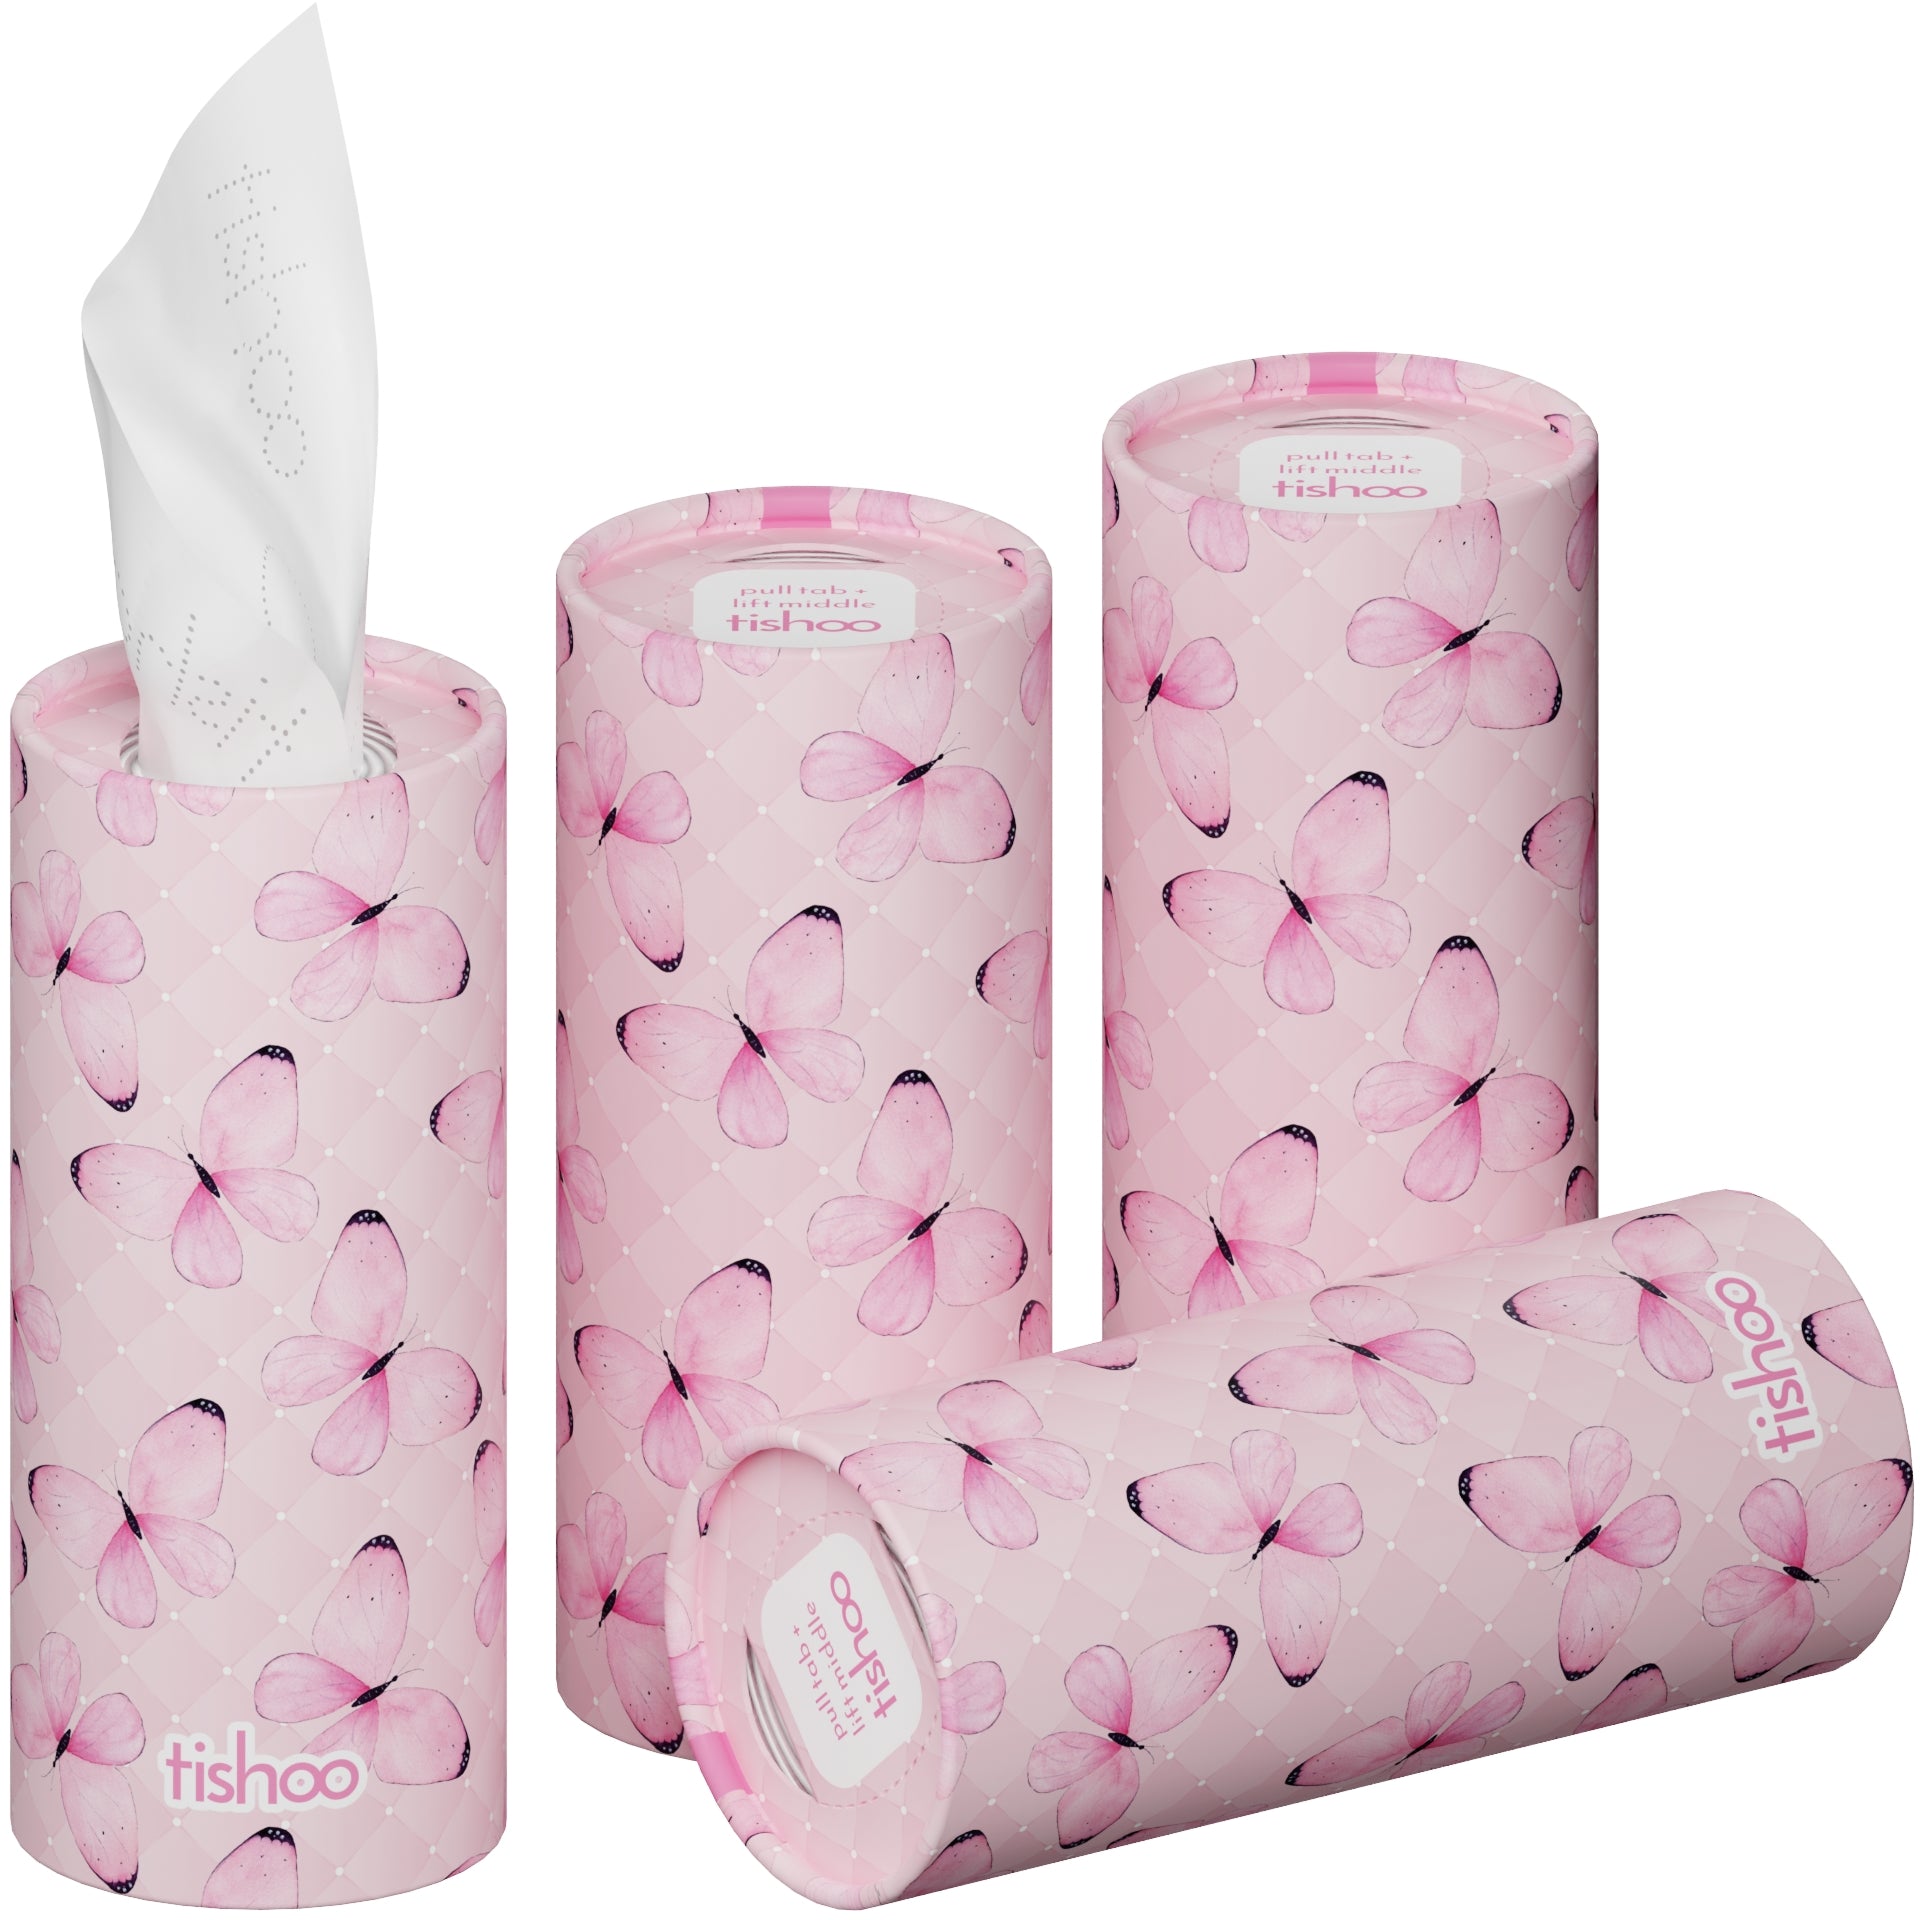 tishoo Luxury Tissues Pink/Butterflies 4 tubes